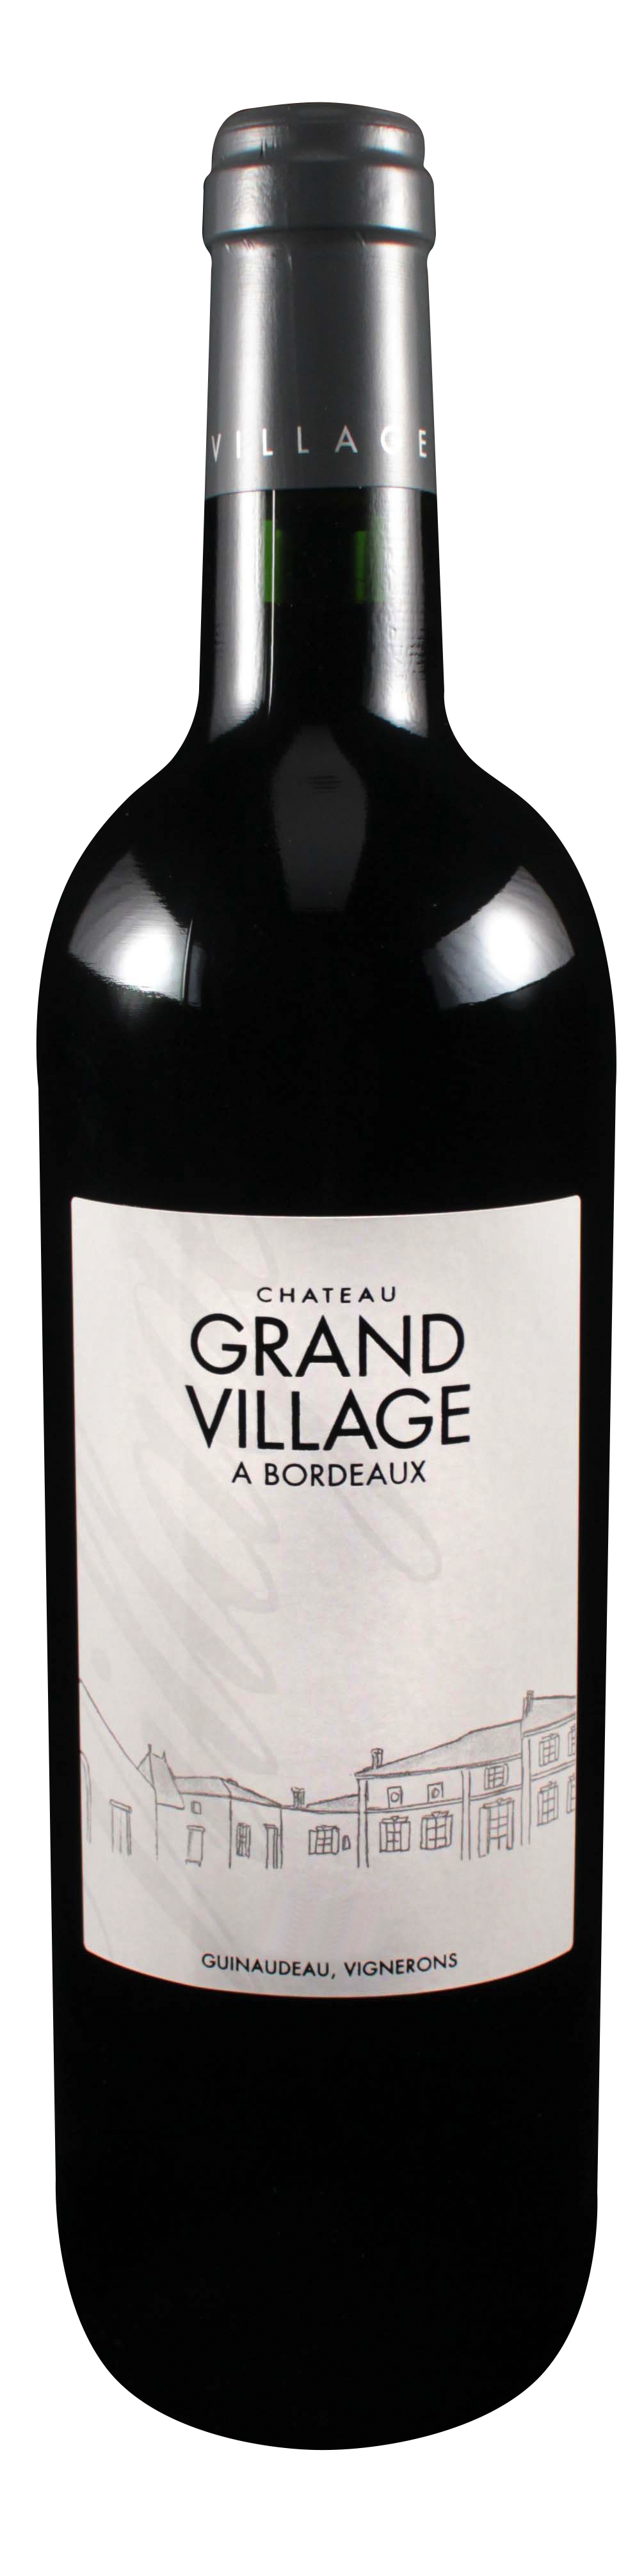 Bottle shot of 2003 Château Grand Village Rouge, Bordeaux Supérieur